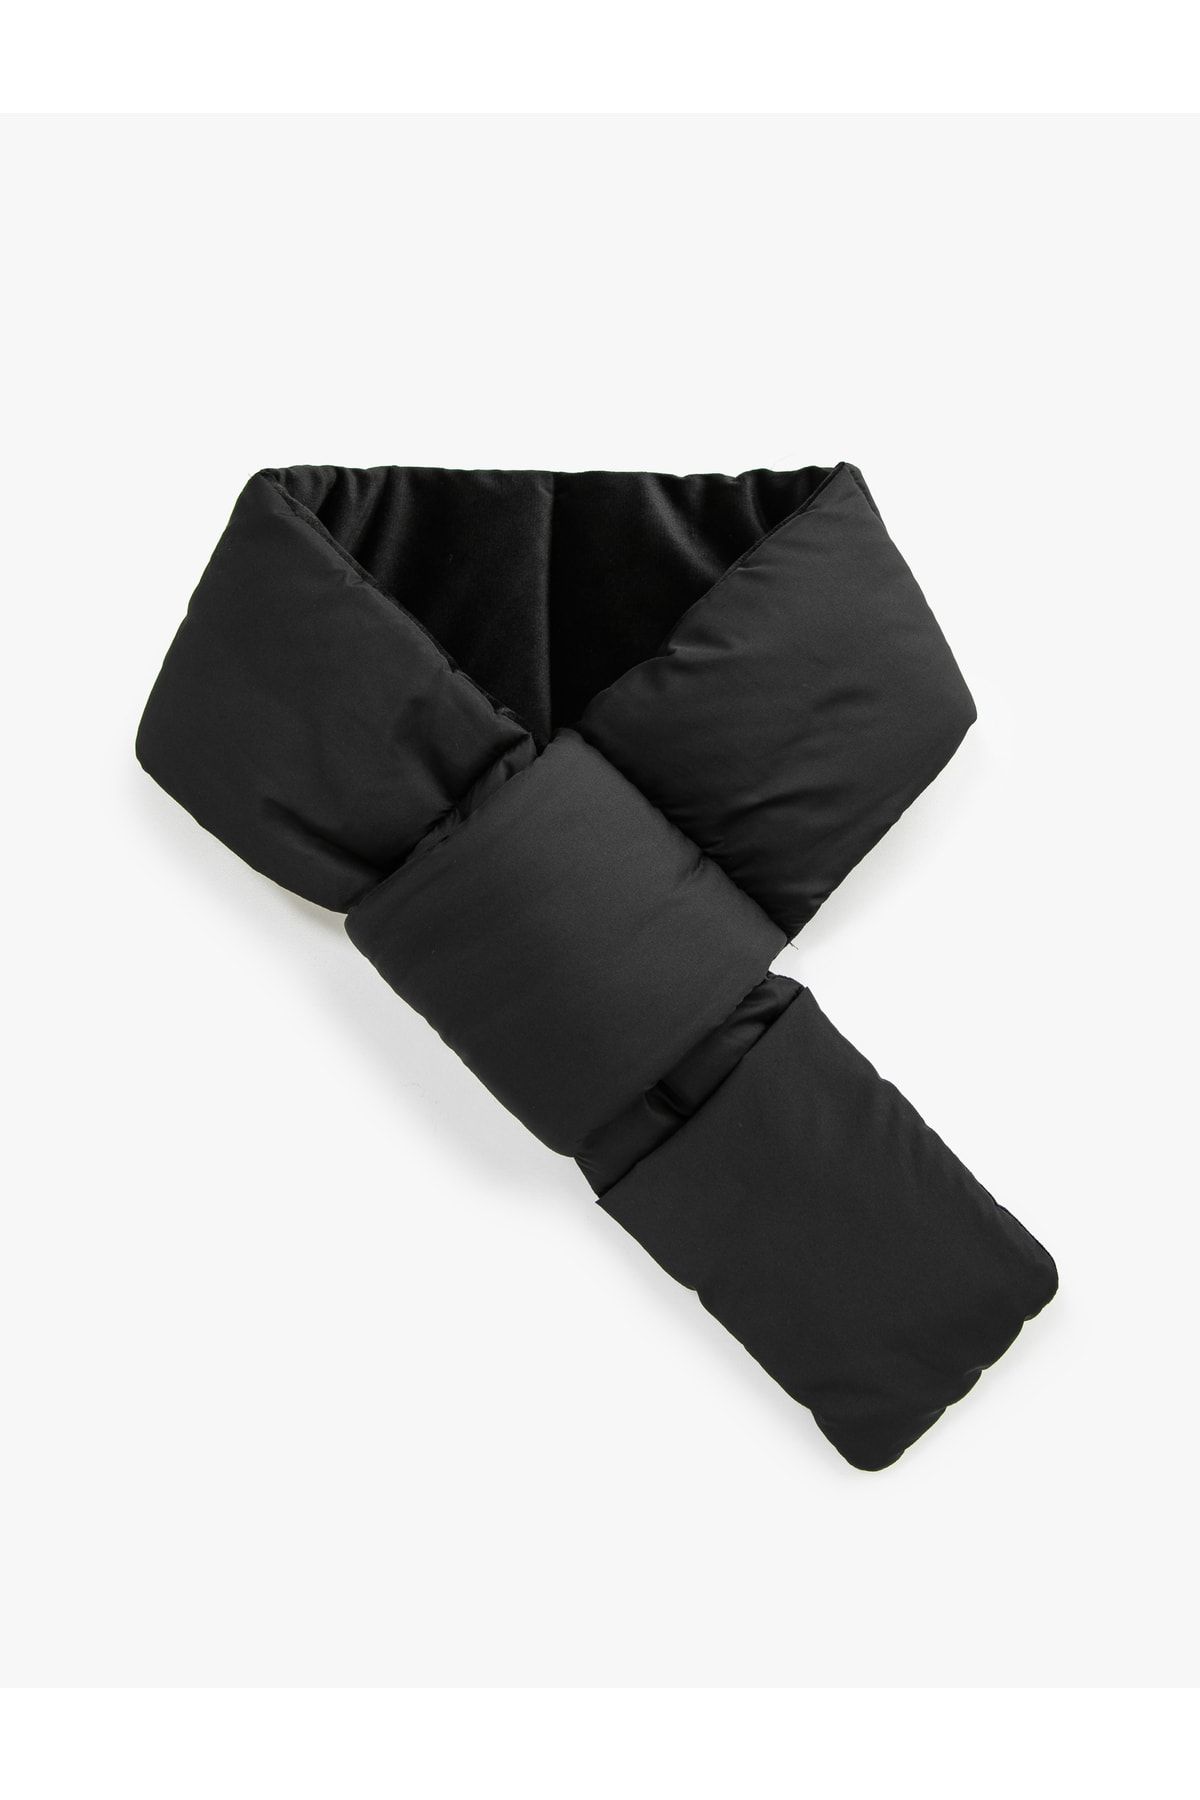 شال گردنی بادی جیب دار کوتون Koton (برند ترکیه)